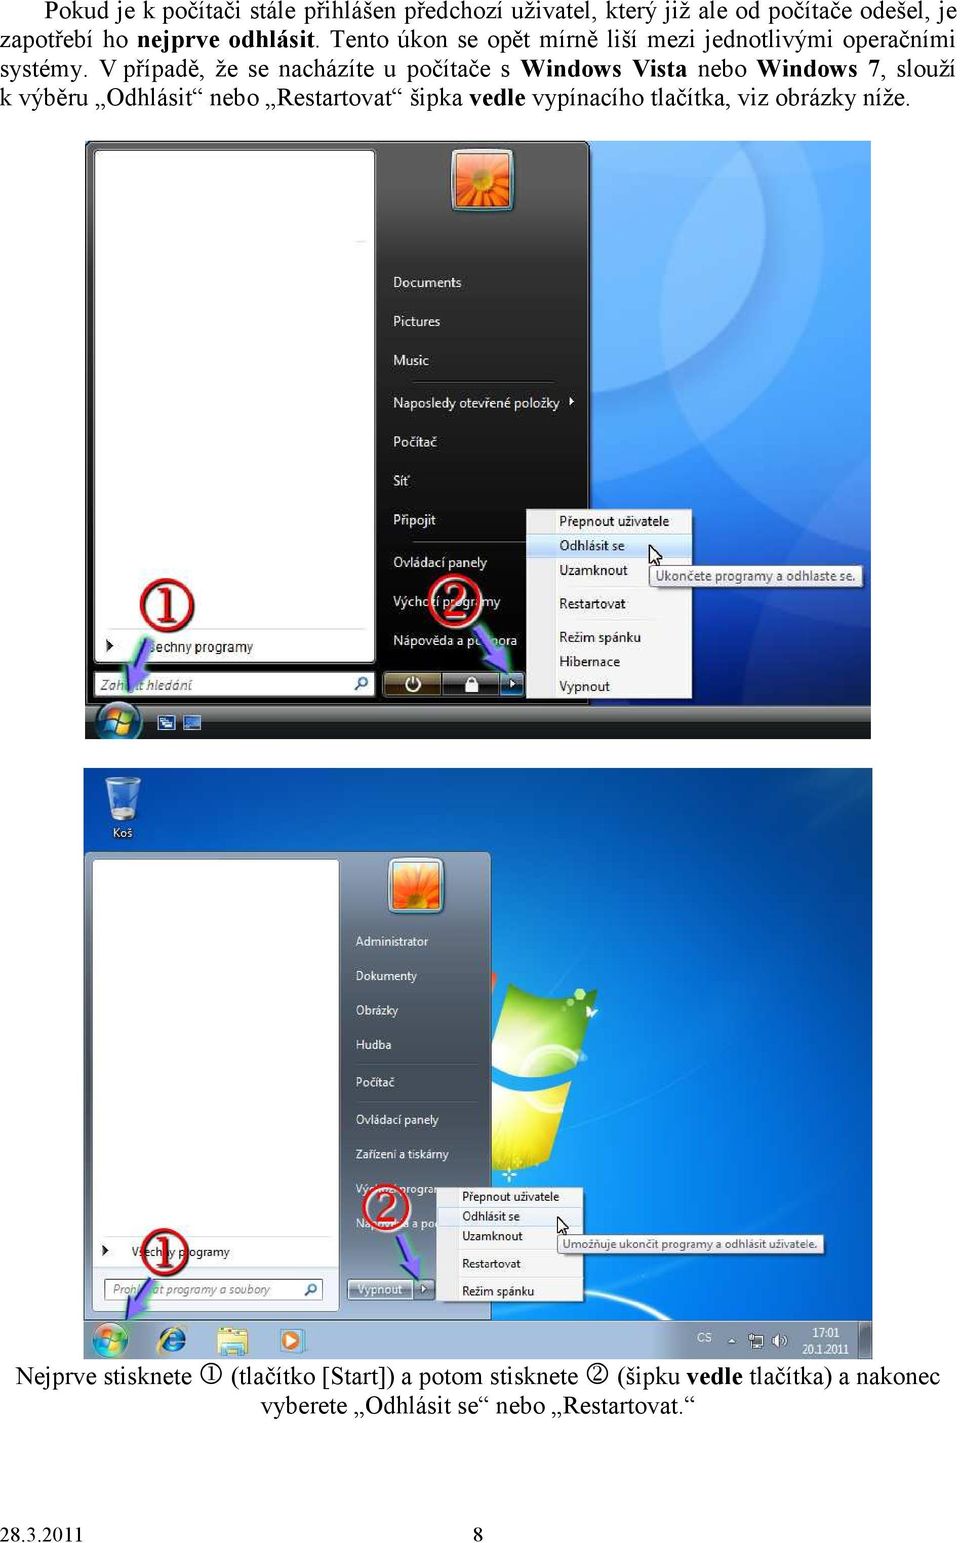 V případě, že se nacházíte u počítače s Windows Vista nebo Windows 7, slouží k výběru Odhlásit nebo Restartovat šipka vedle